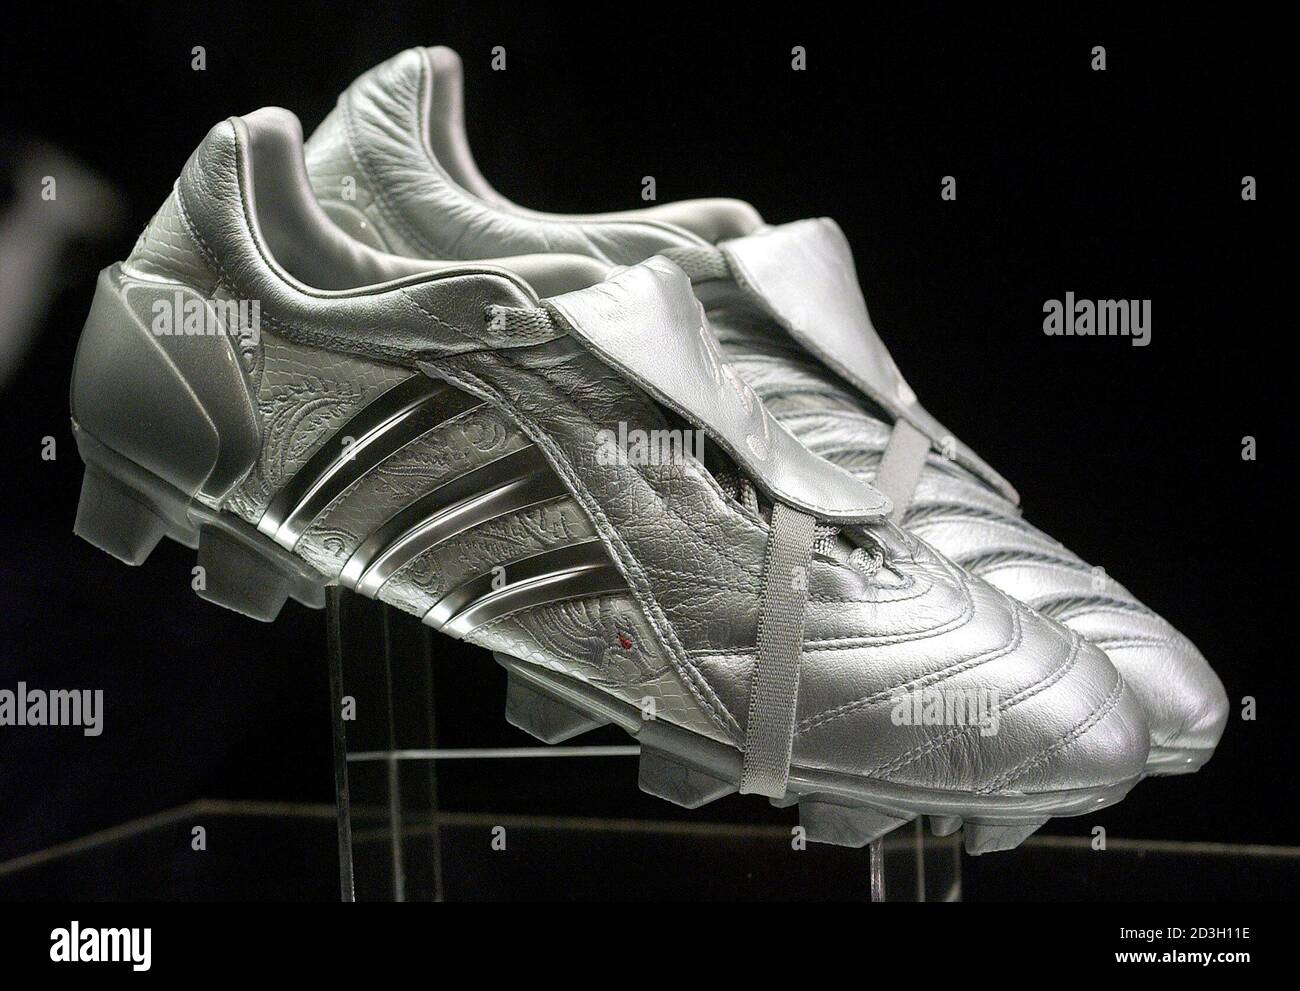 Una nuova linea di scarpe da calcio Adidas Predator Pulse viene mostrata  durante la loro presentazione da parte della star britannica David Beckham  durante un evento promozionale presso il negozio Adidas di